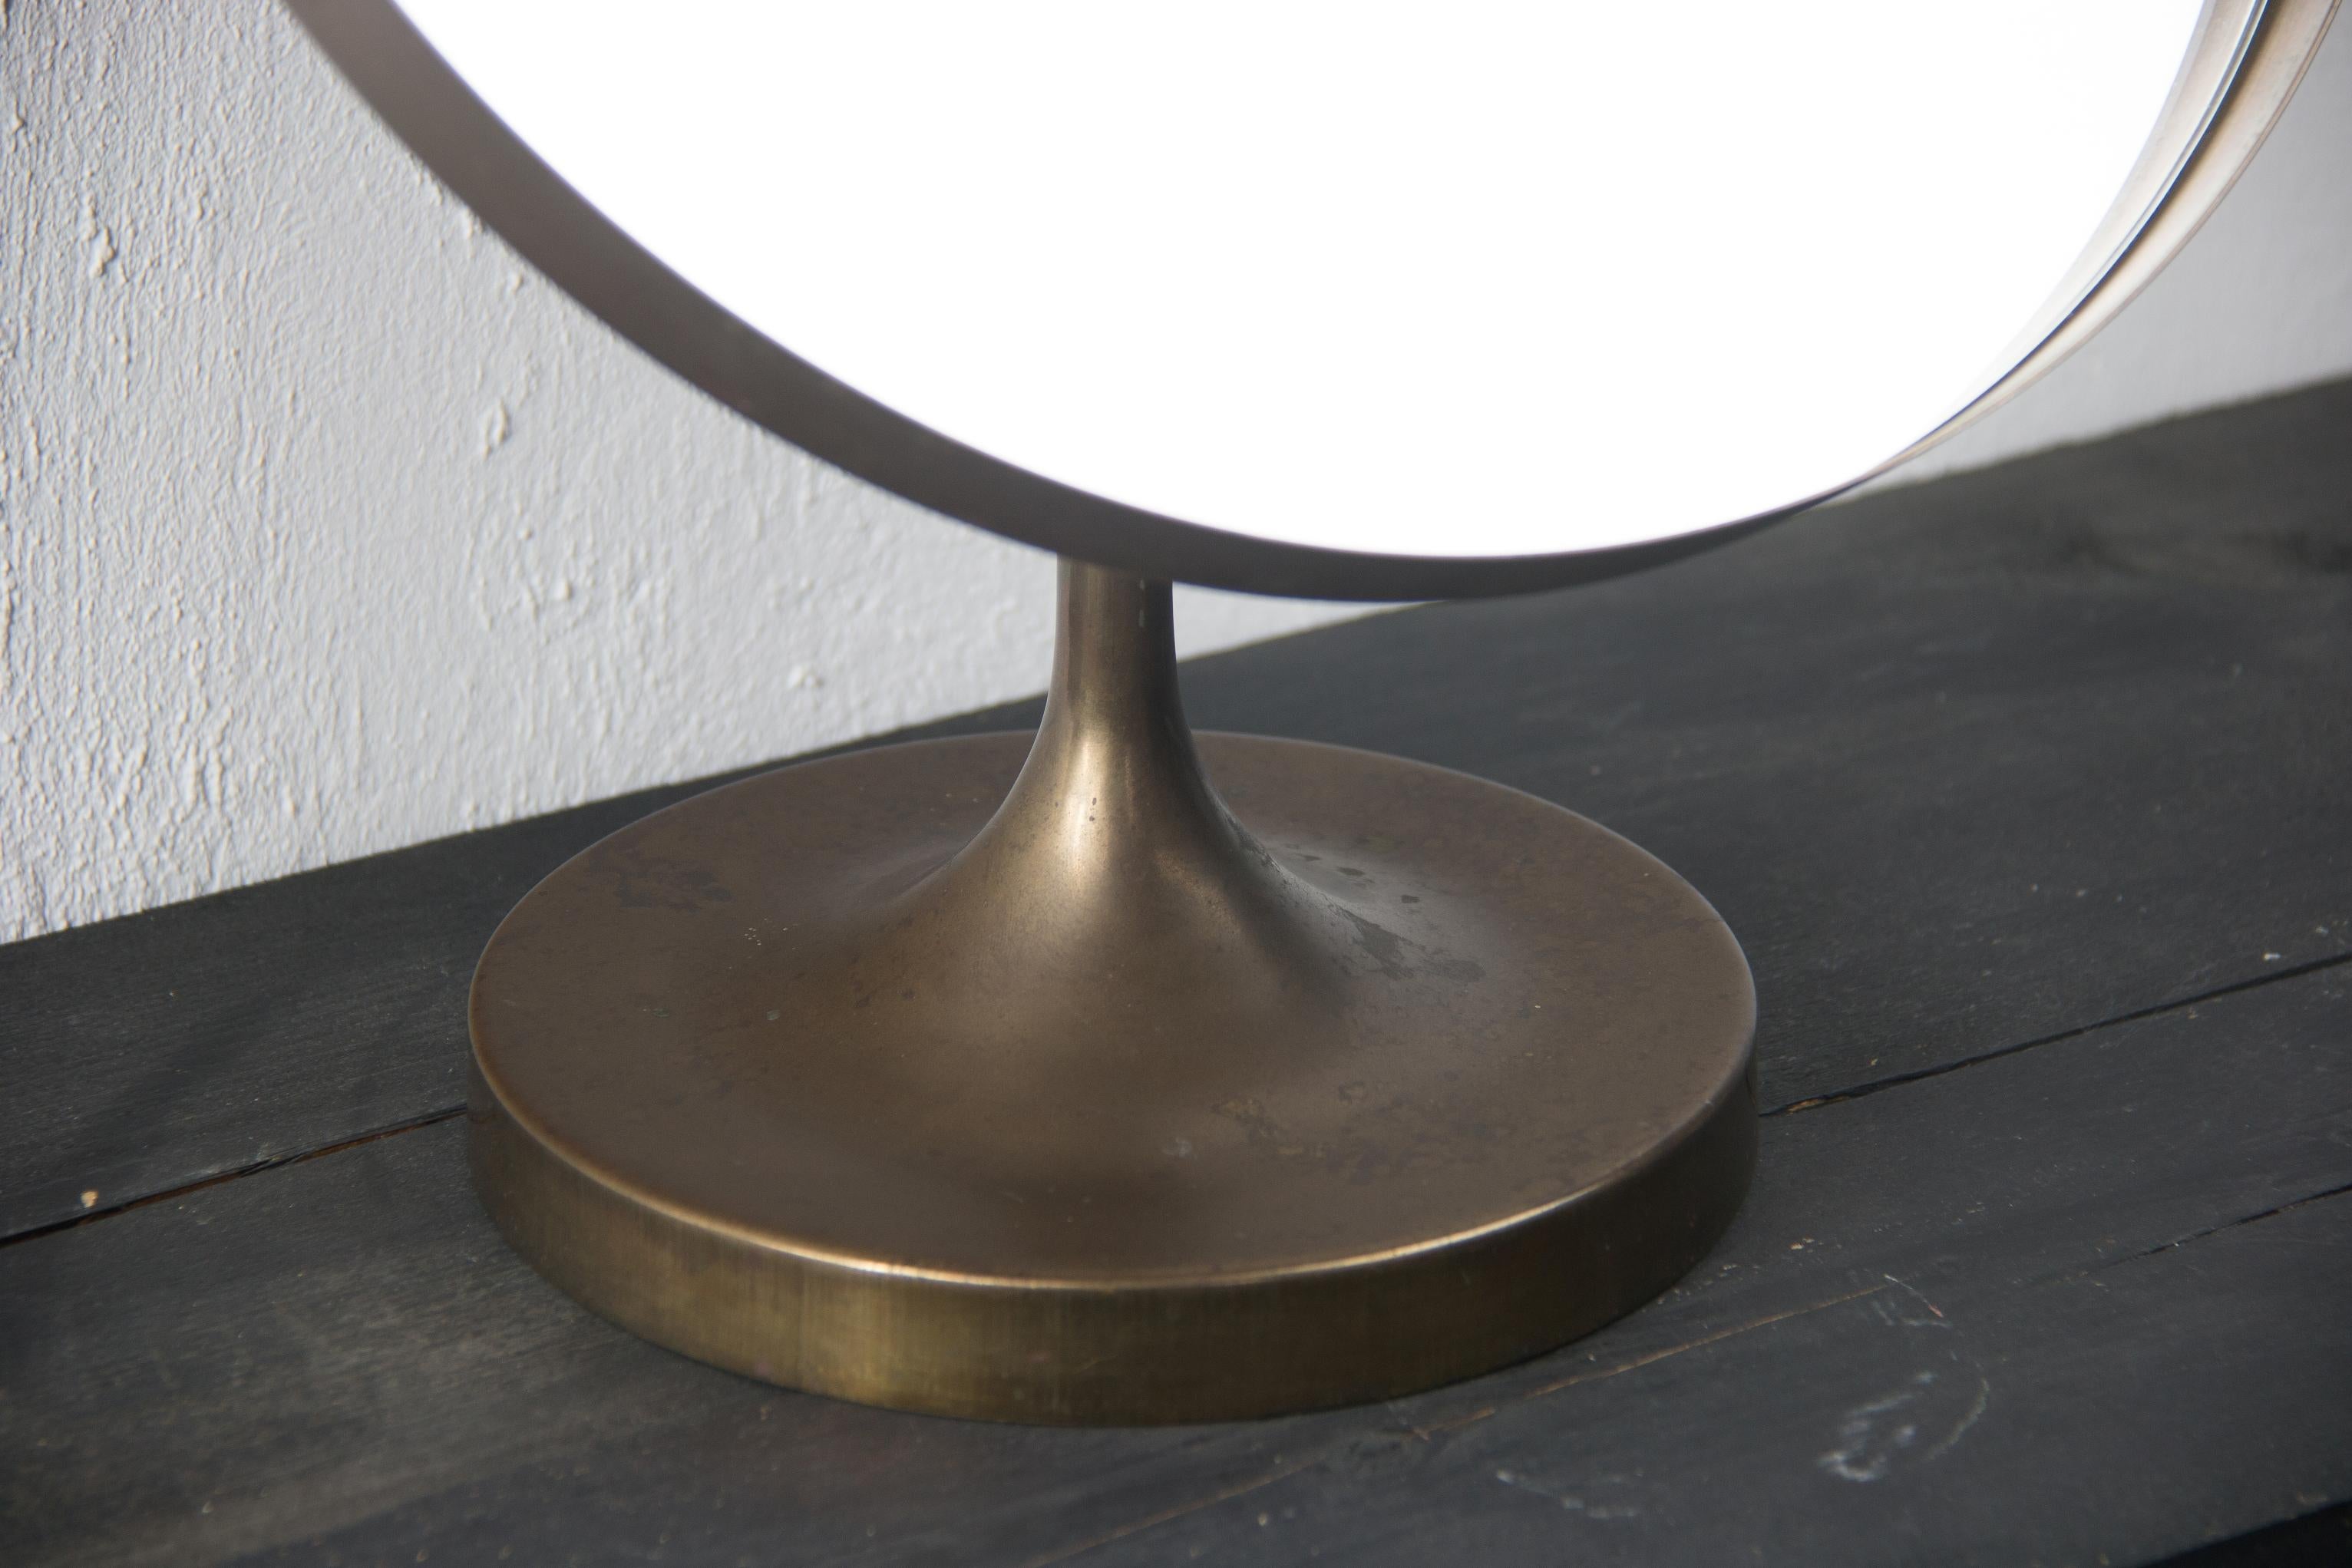 Seltener Tischspiegel in Bronze aus Schweden
Josef Frank zugeschrieben
tulpenförmiger Fuß
